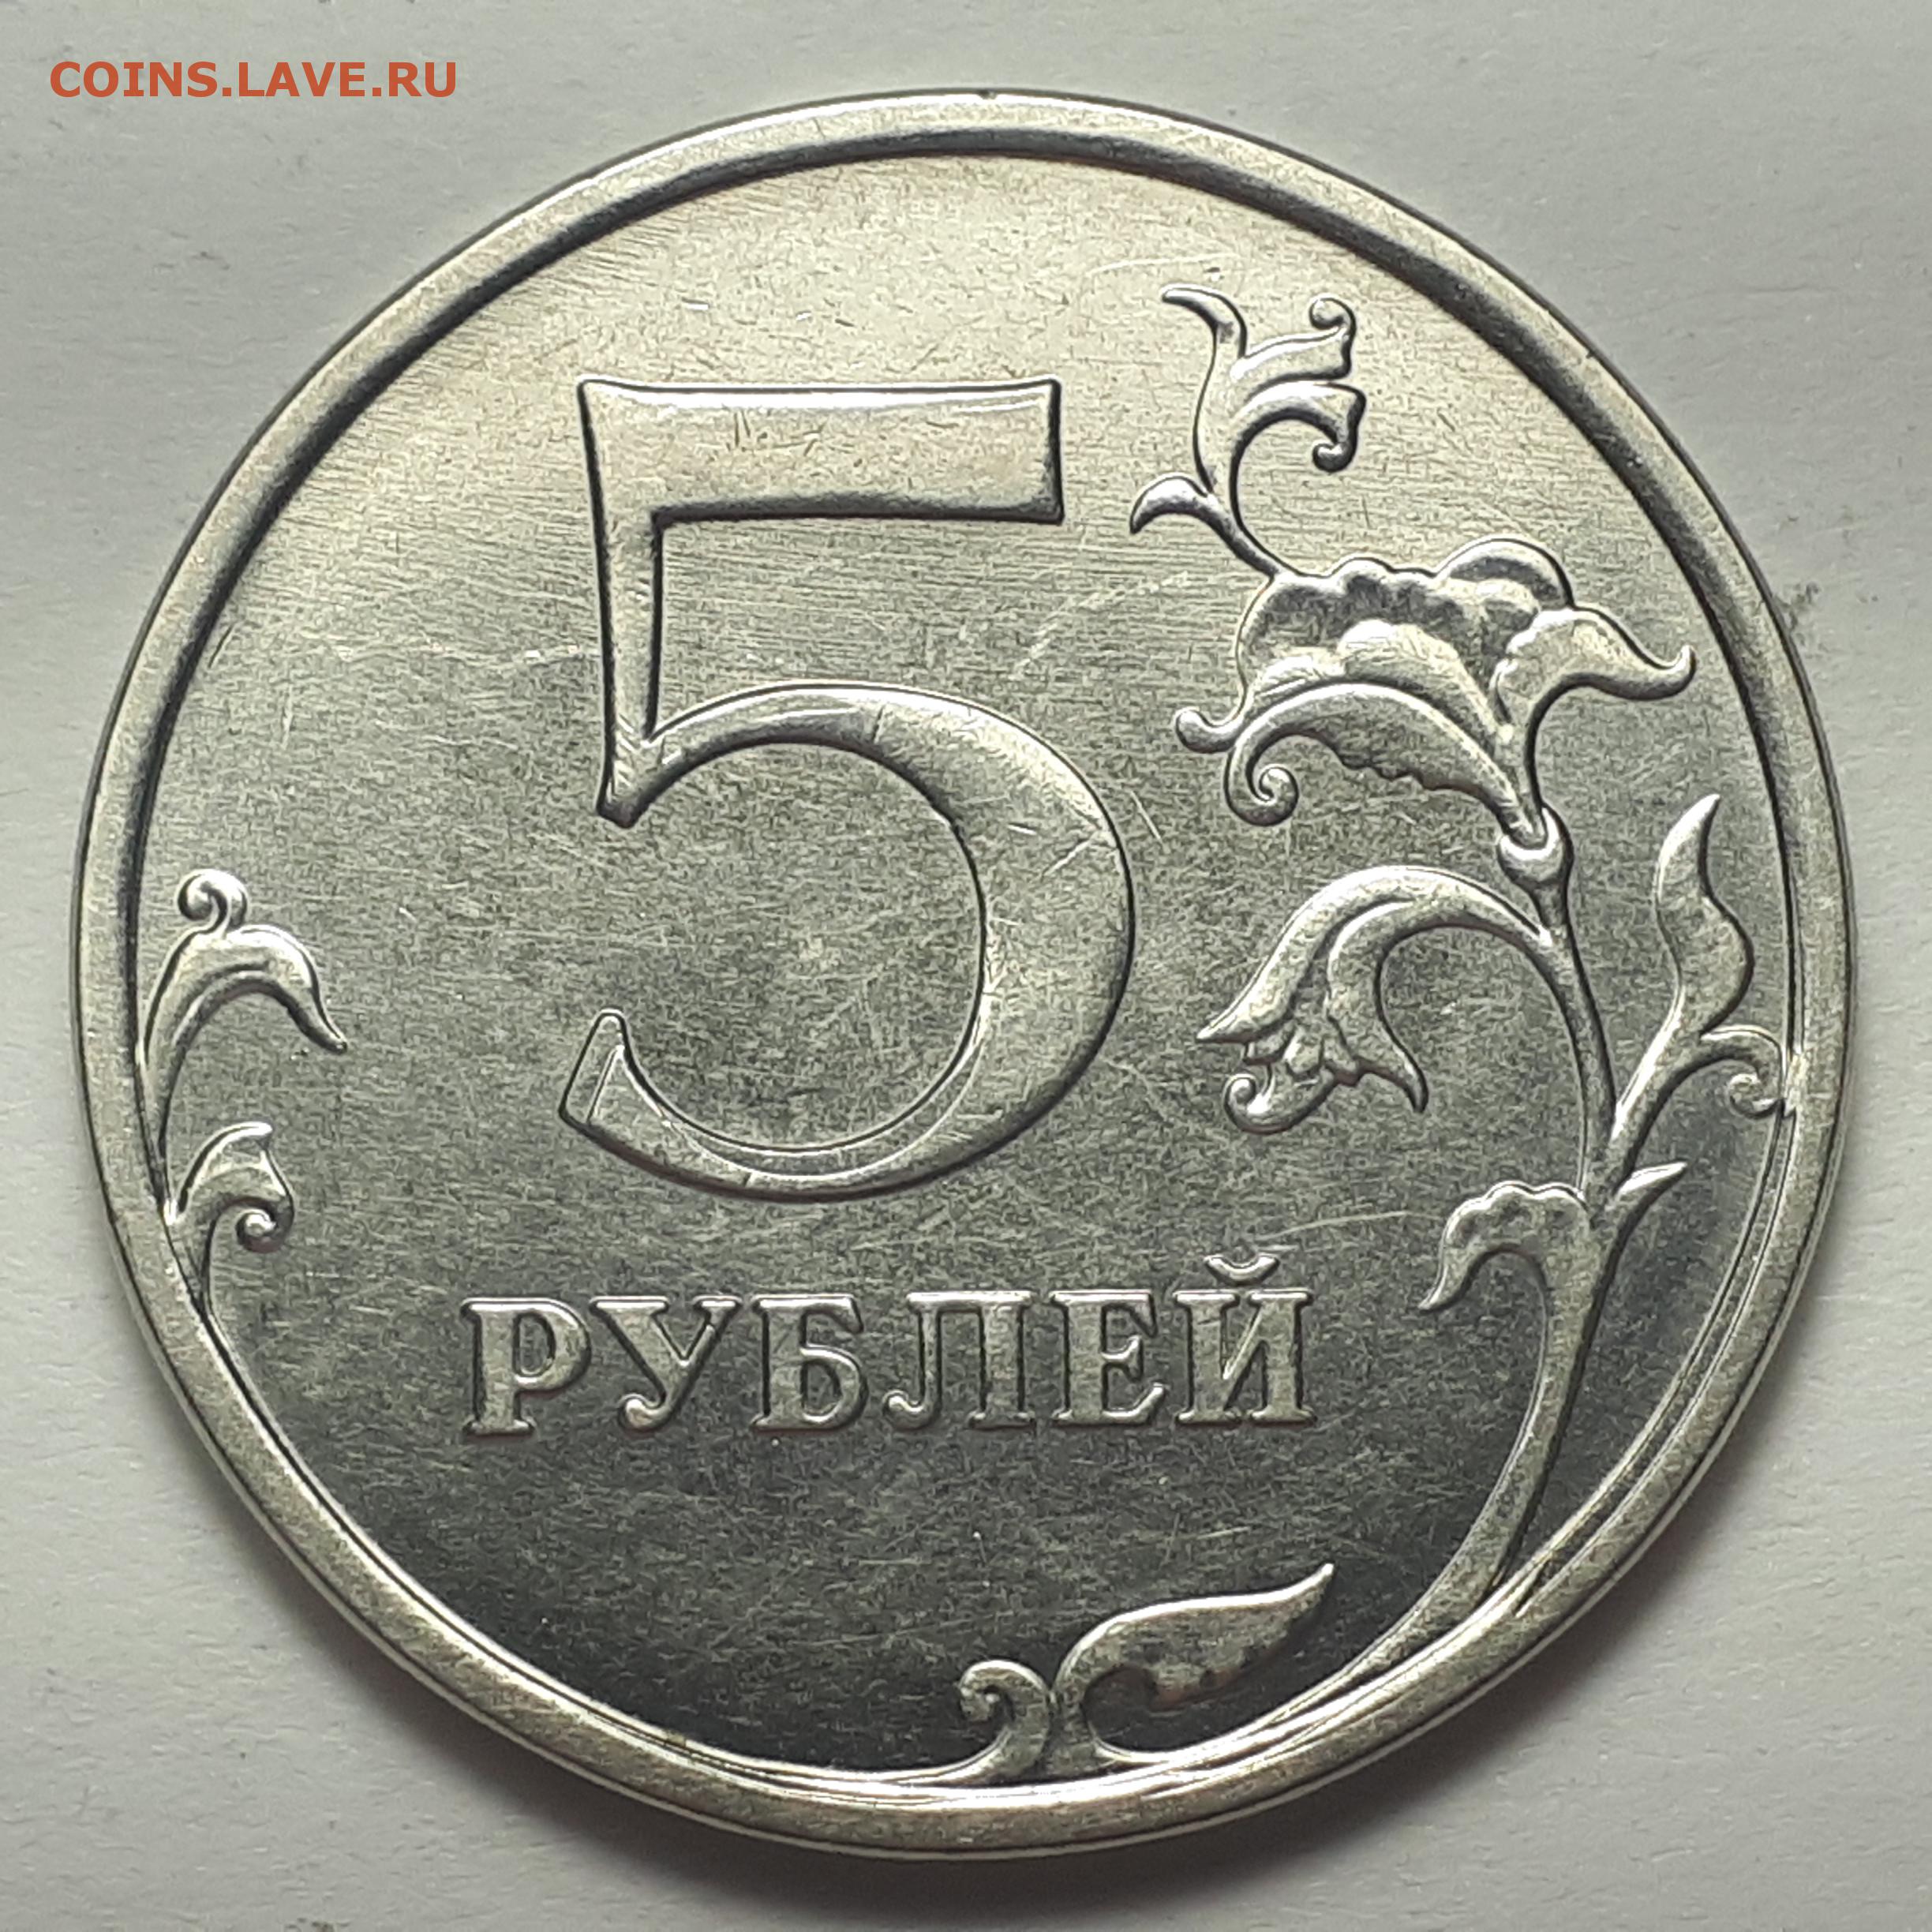 65 рублей 60. 5 Рублей двойной удар. 5 Р 2014 ММД старые. Двойной удар штемпеля. Монета 5 рублей 1756 двойной удар.